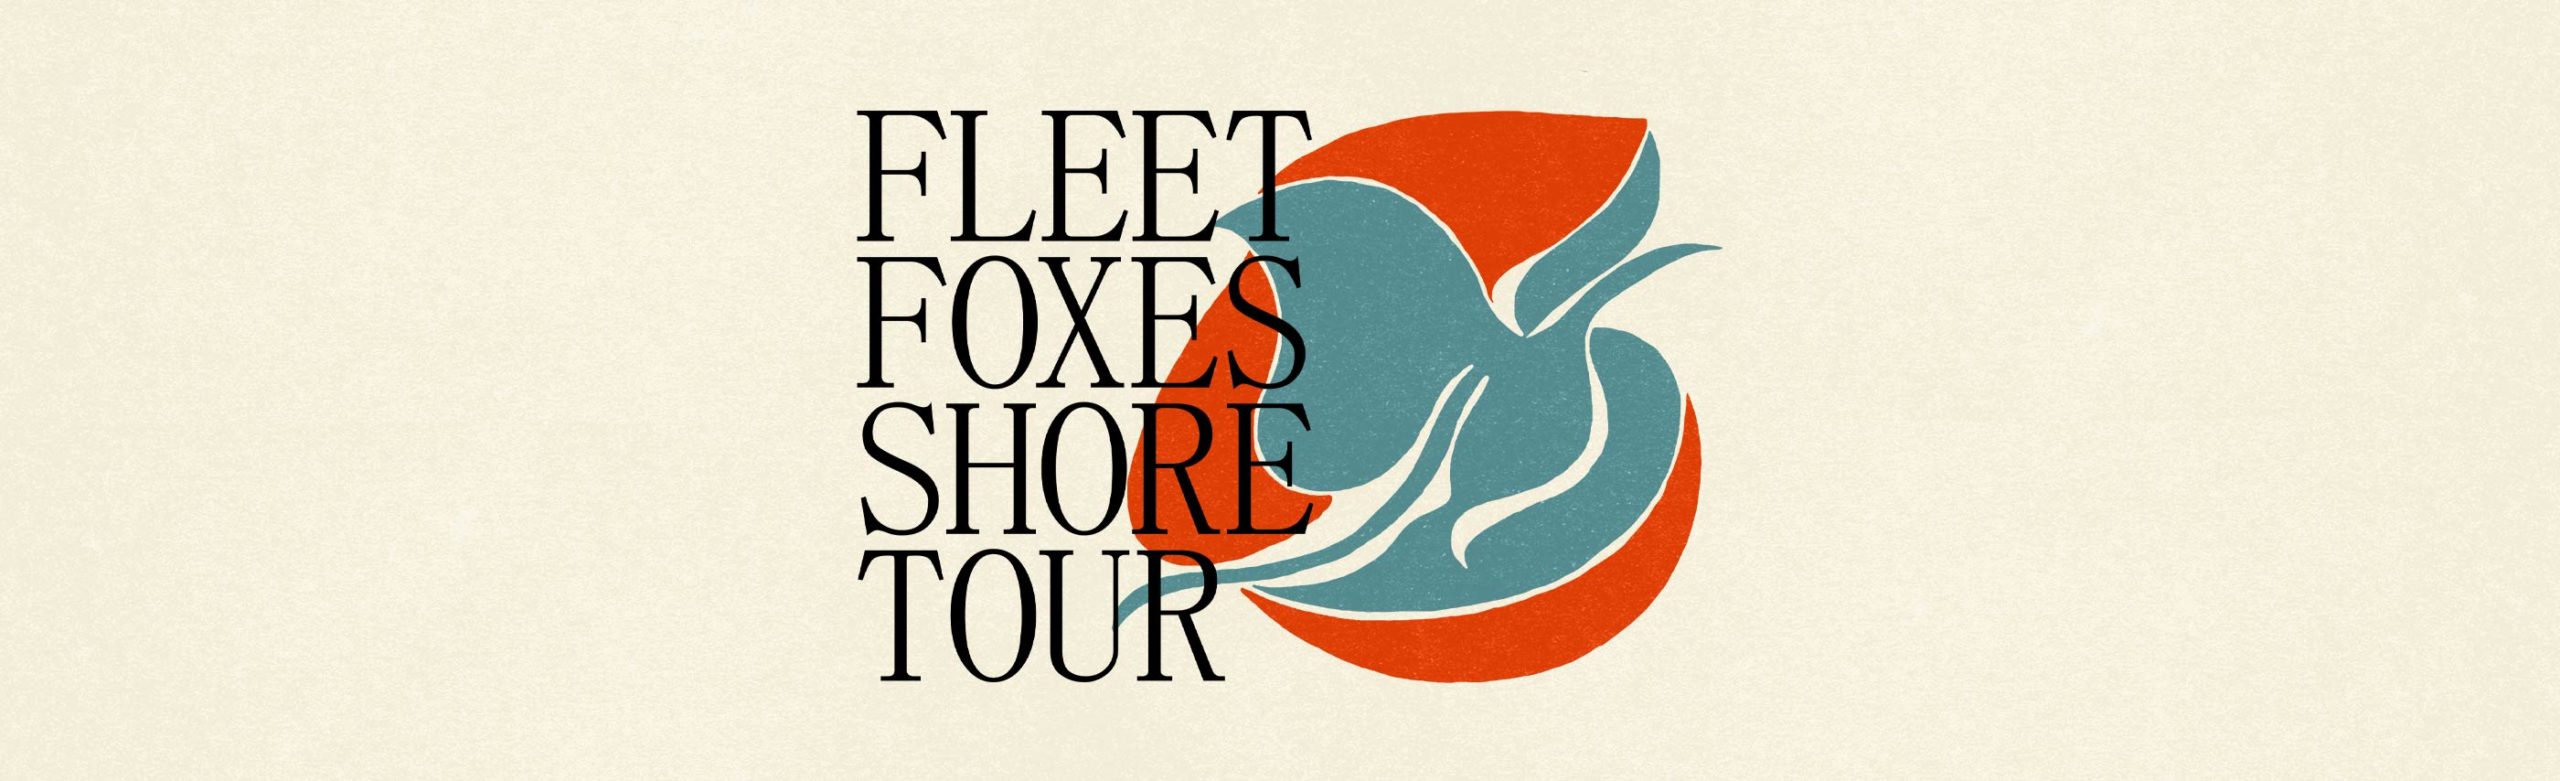 Fleet Foxes Confirm Summer Concert at KettleHouse Amphitheater Image